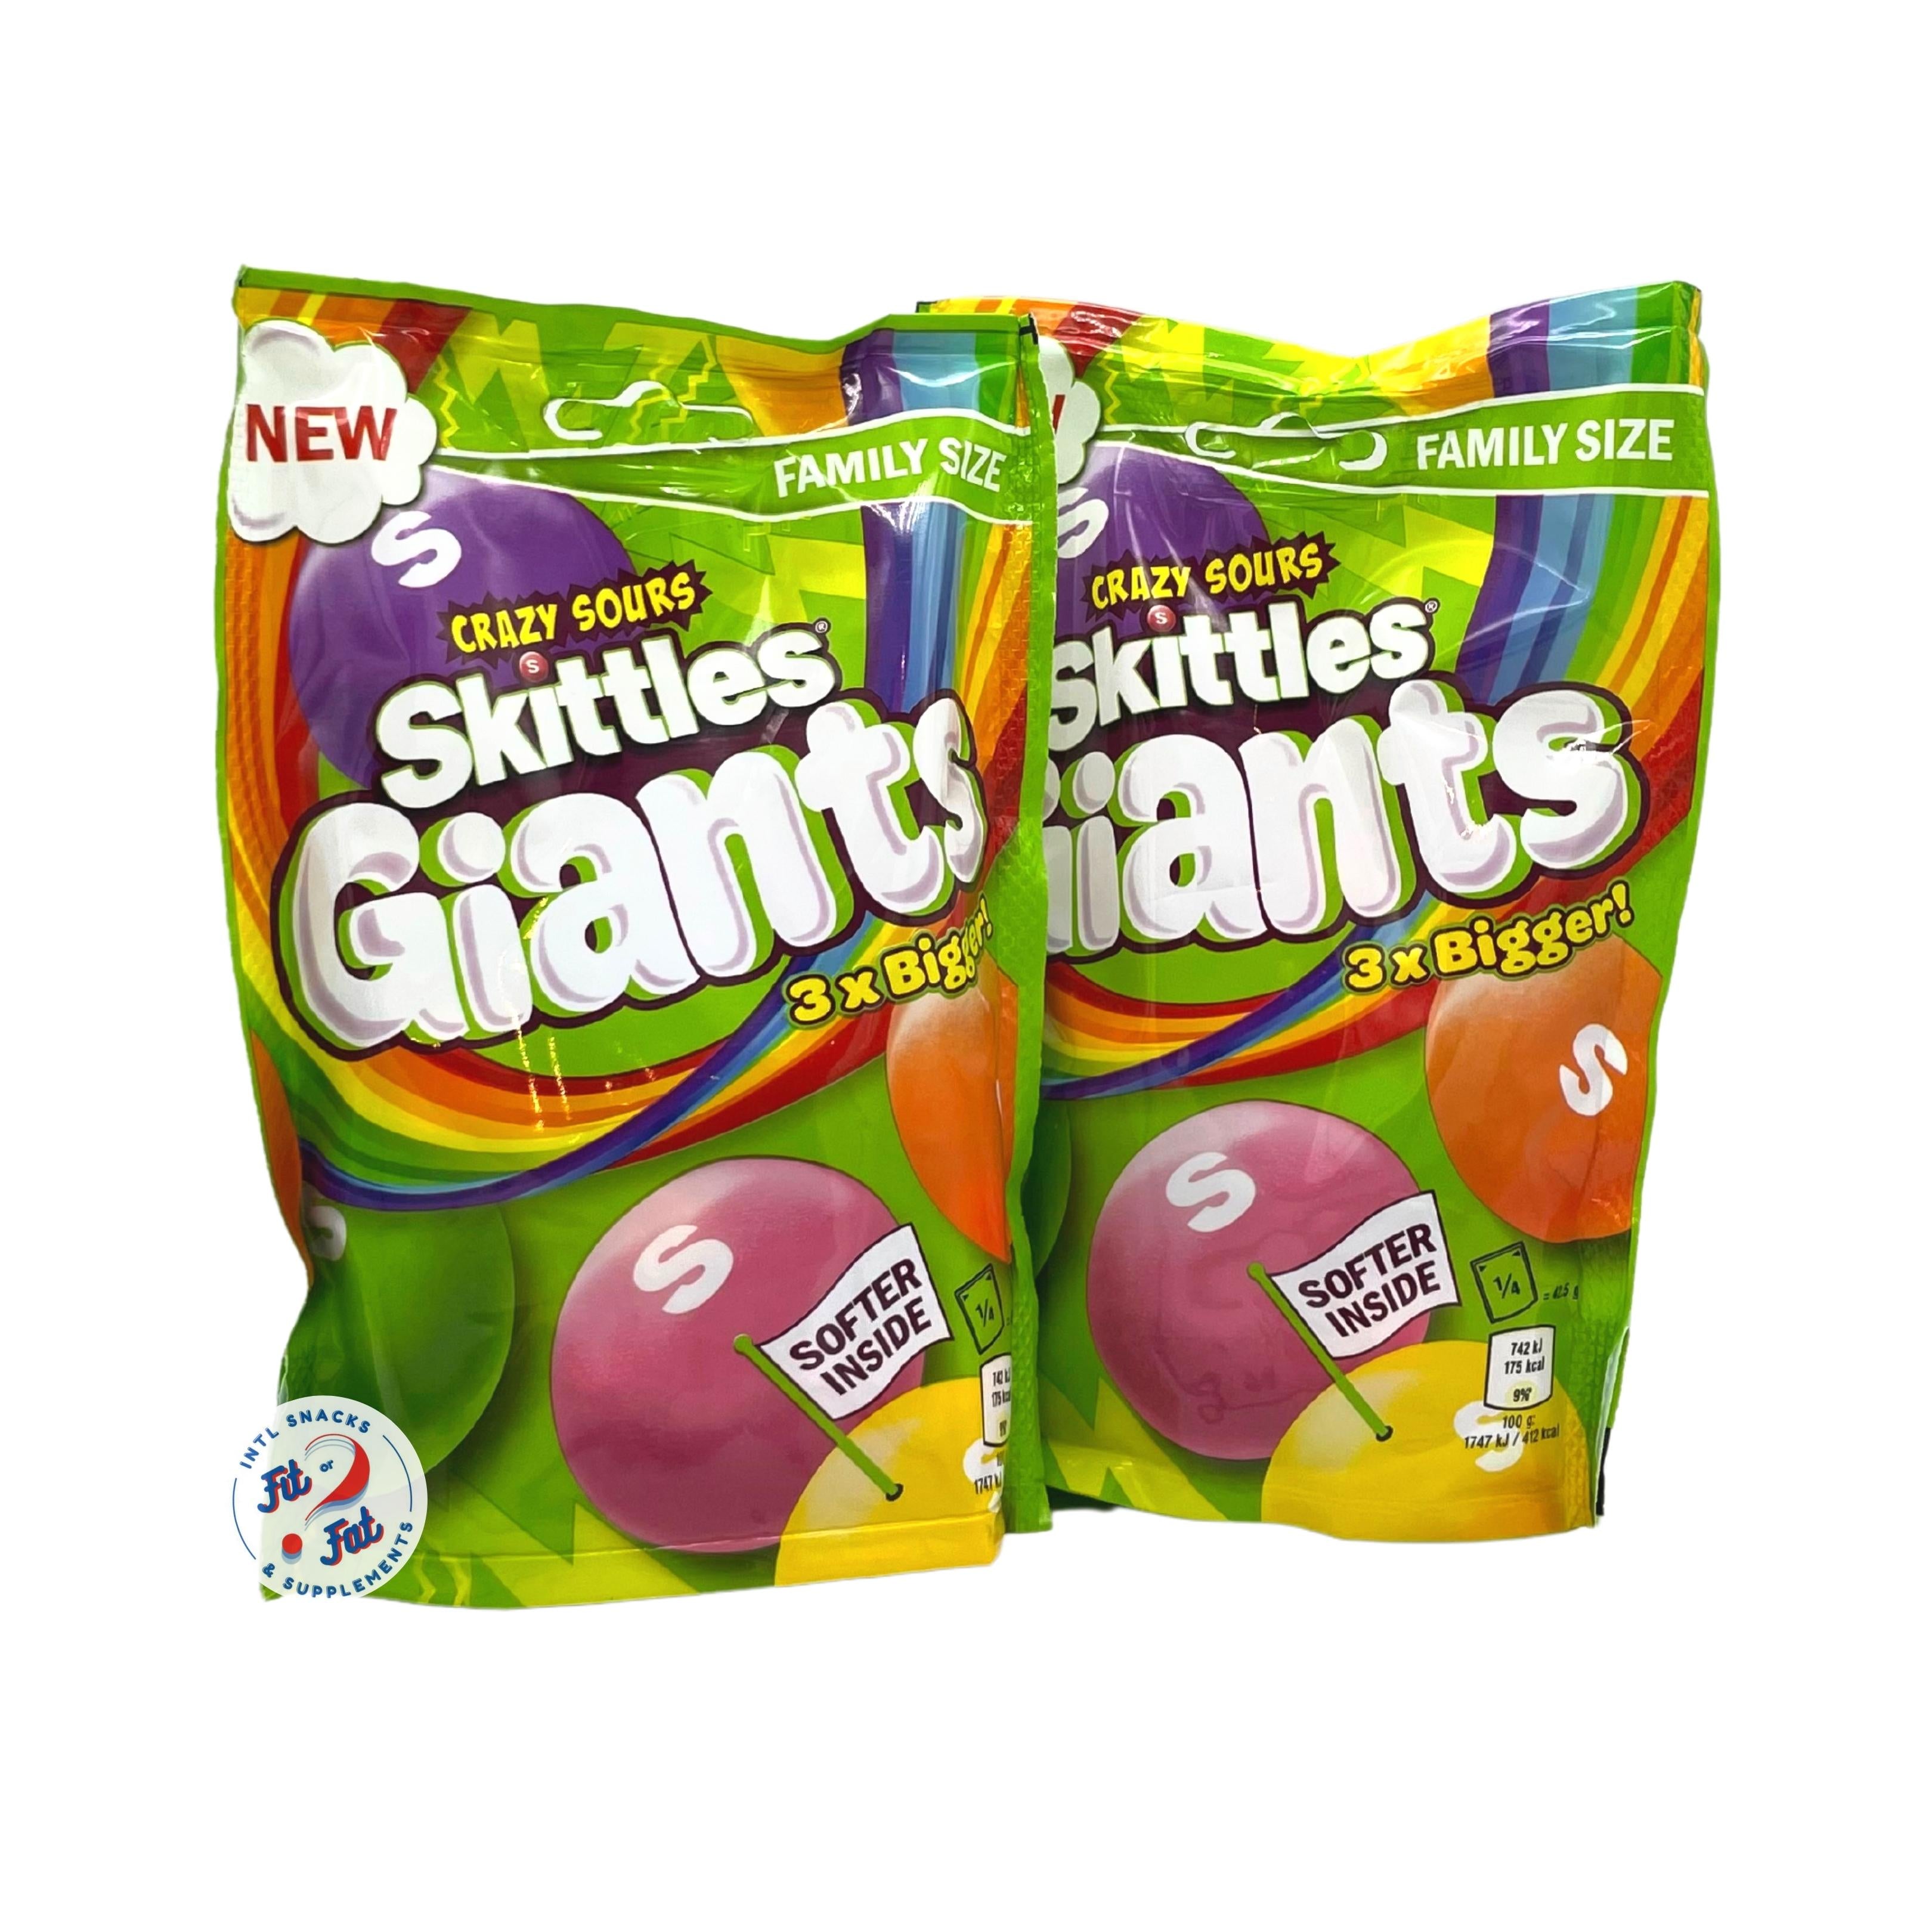 Skittles Giant Sours